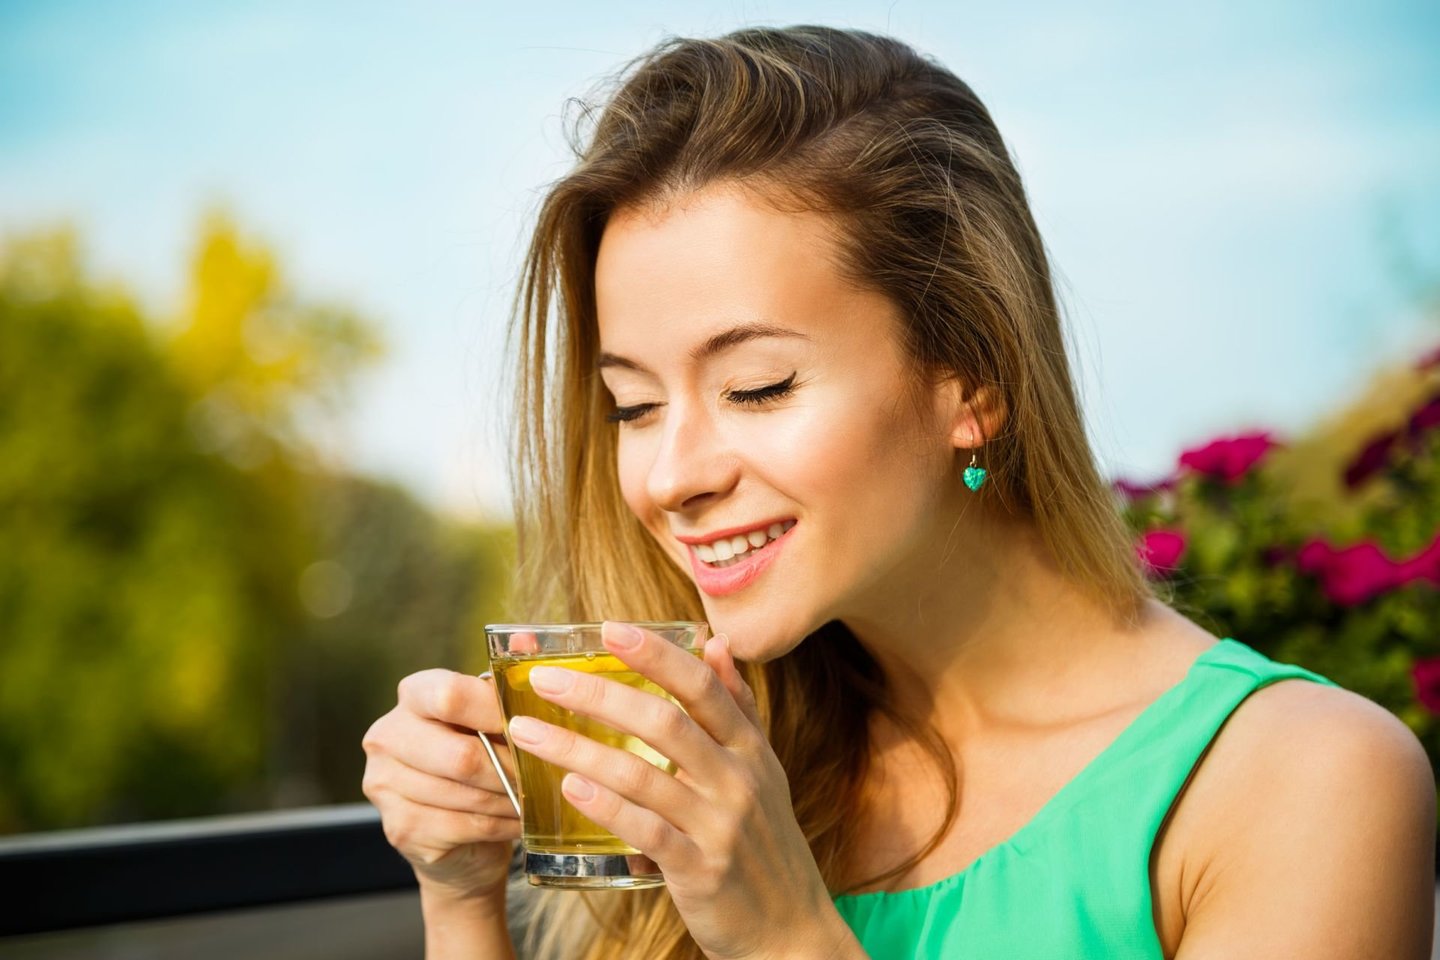  Žalioji arbata turi gana sudėtingą cheminę sudėtį bei daug naudingųjų maistinių medžiagų.<br> 123rf nuotr.